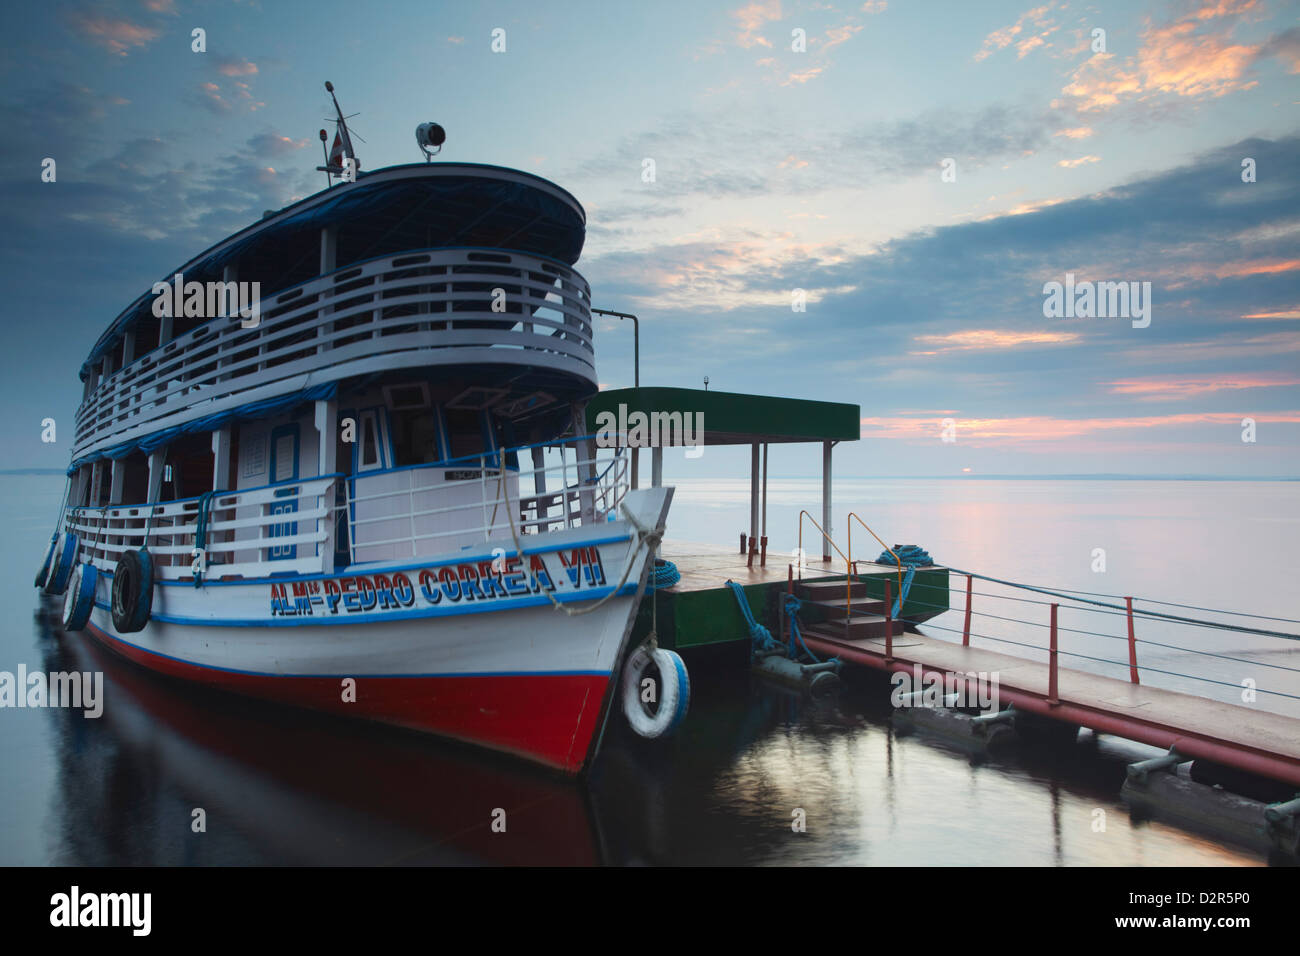 Riverboat vertäut am Rio Negro, Manaus, Amazonas, Brasilien, Südamerika Stockfoto